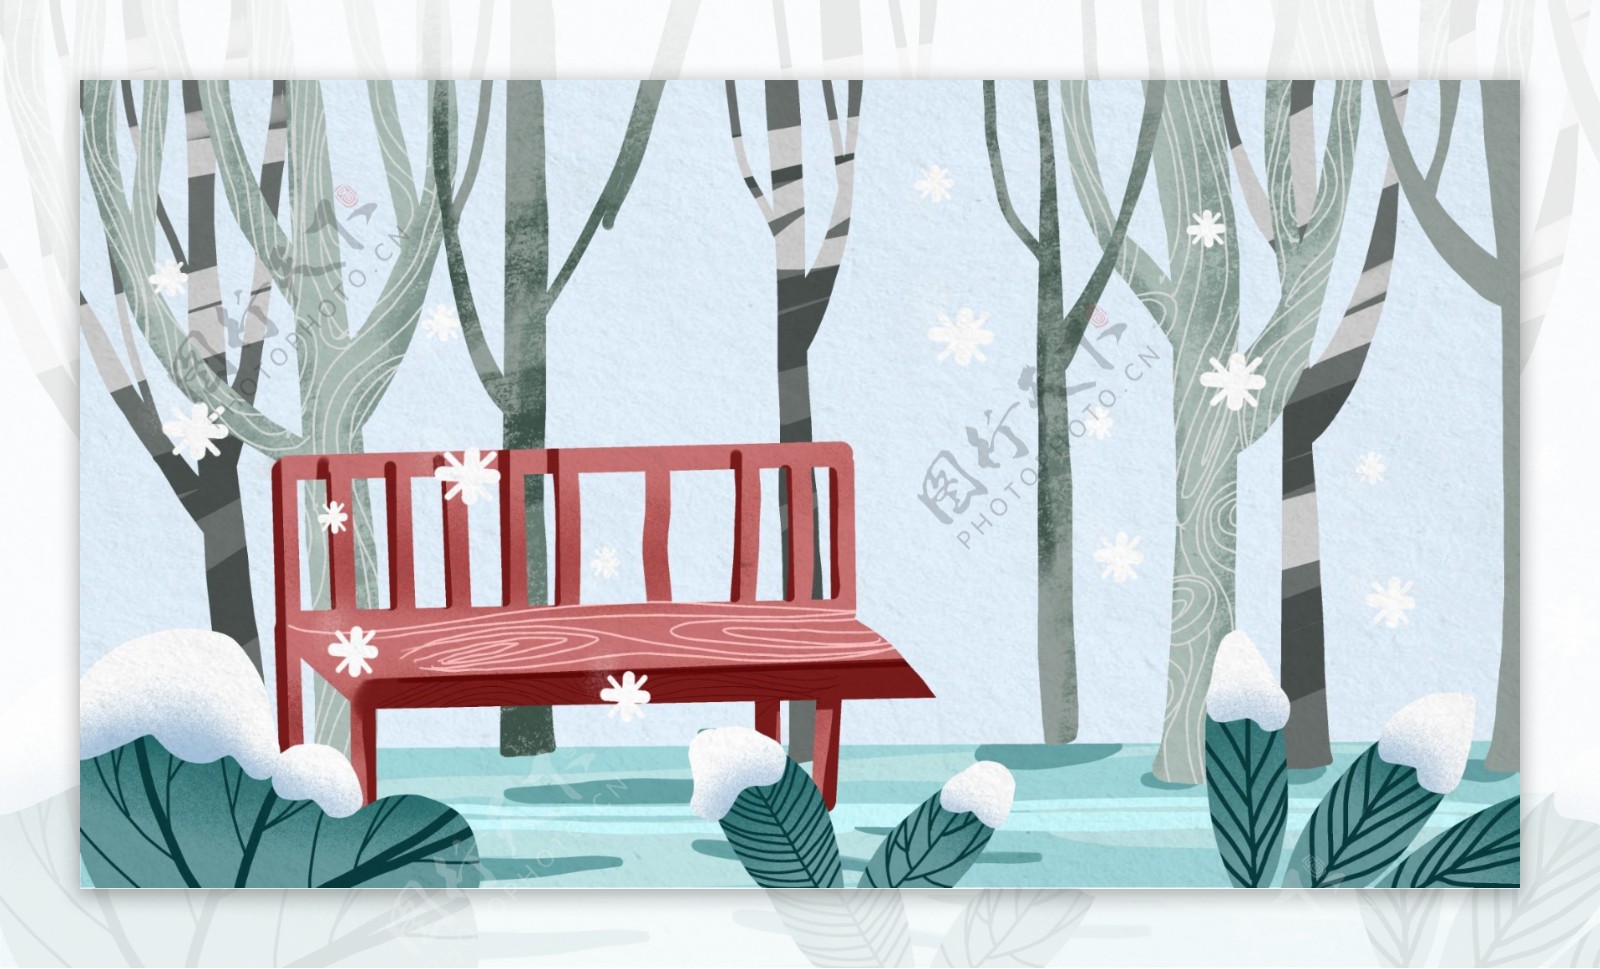 唯美清新公园雪景插画背景设计